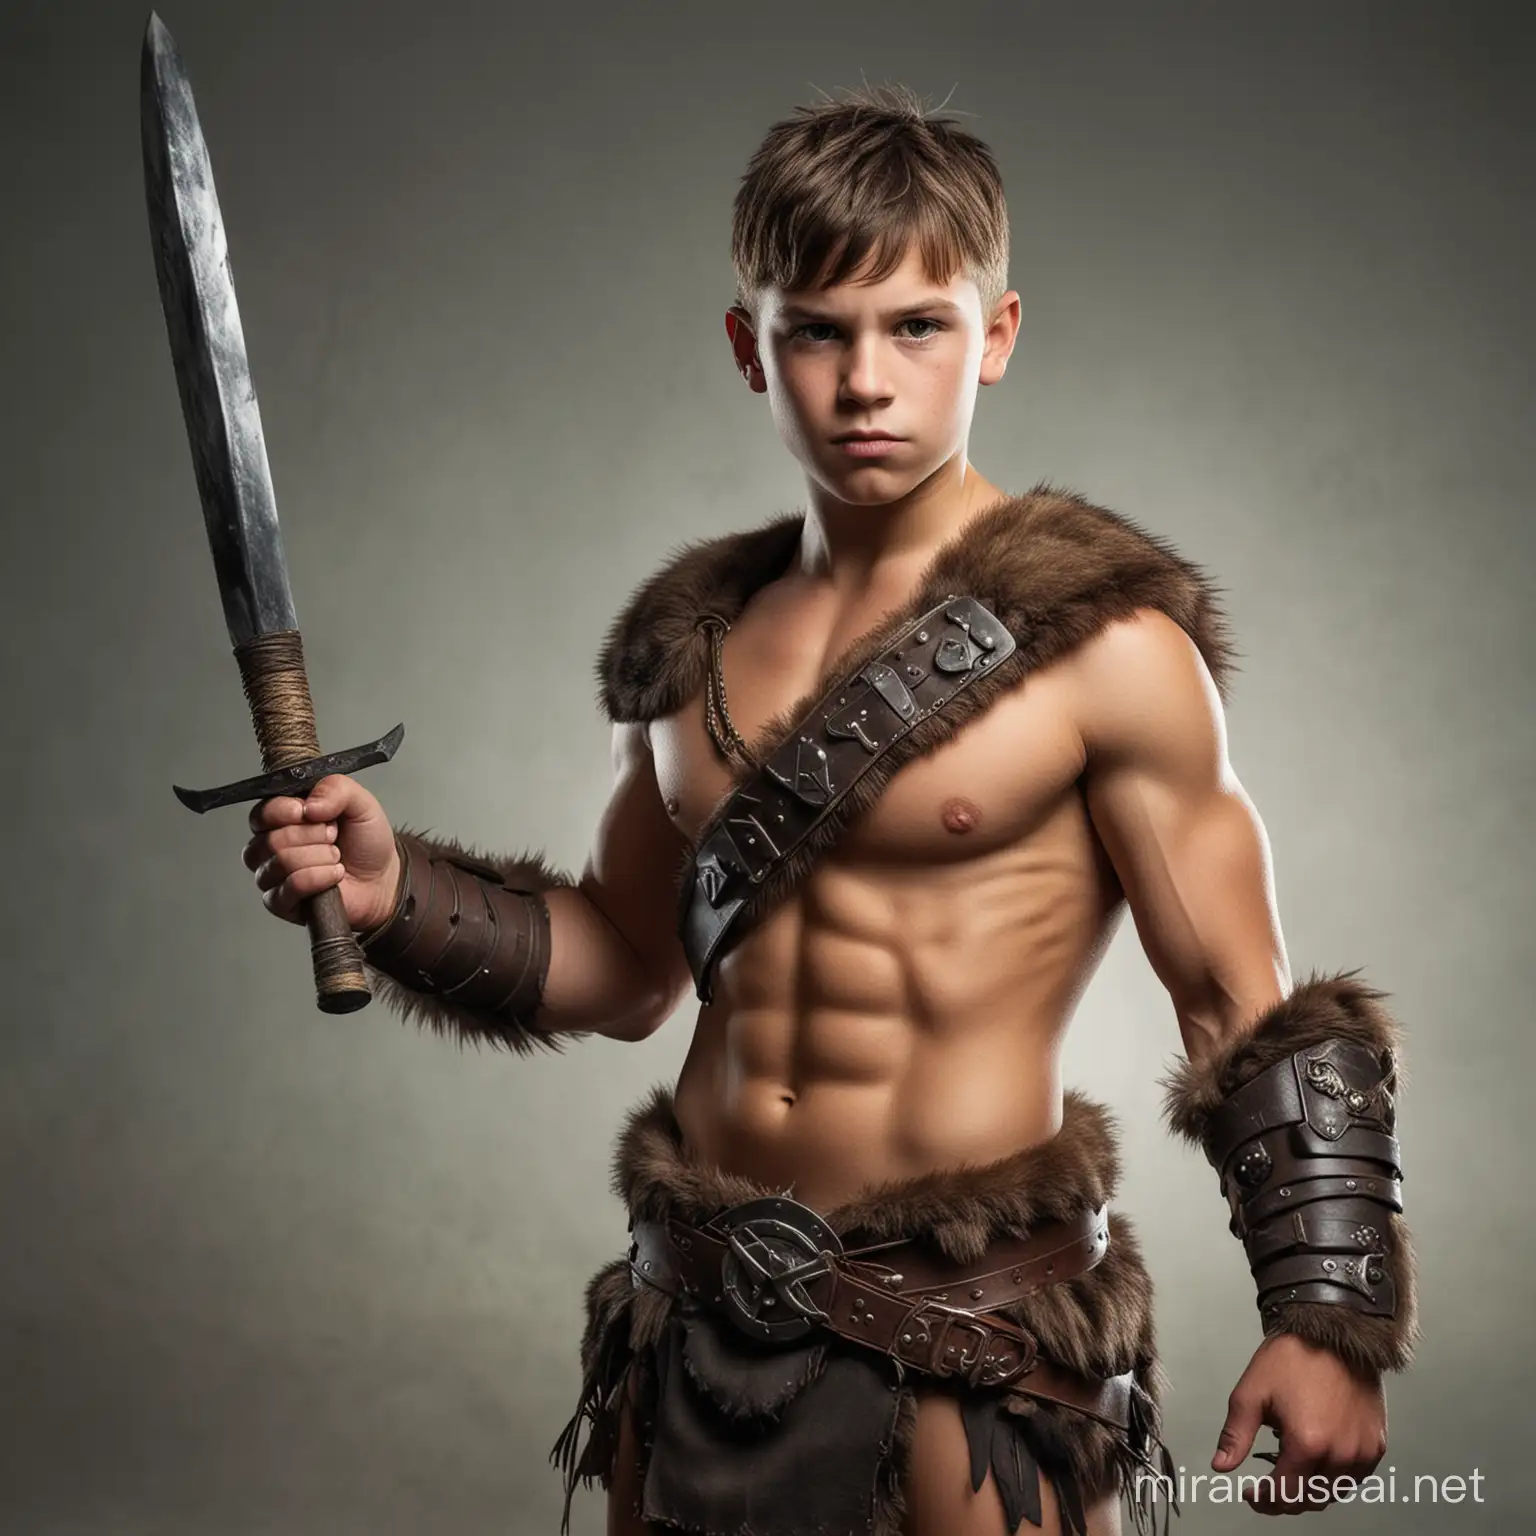 Adventurous Young Boy in Fantasy Barbarian Attire